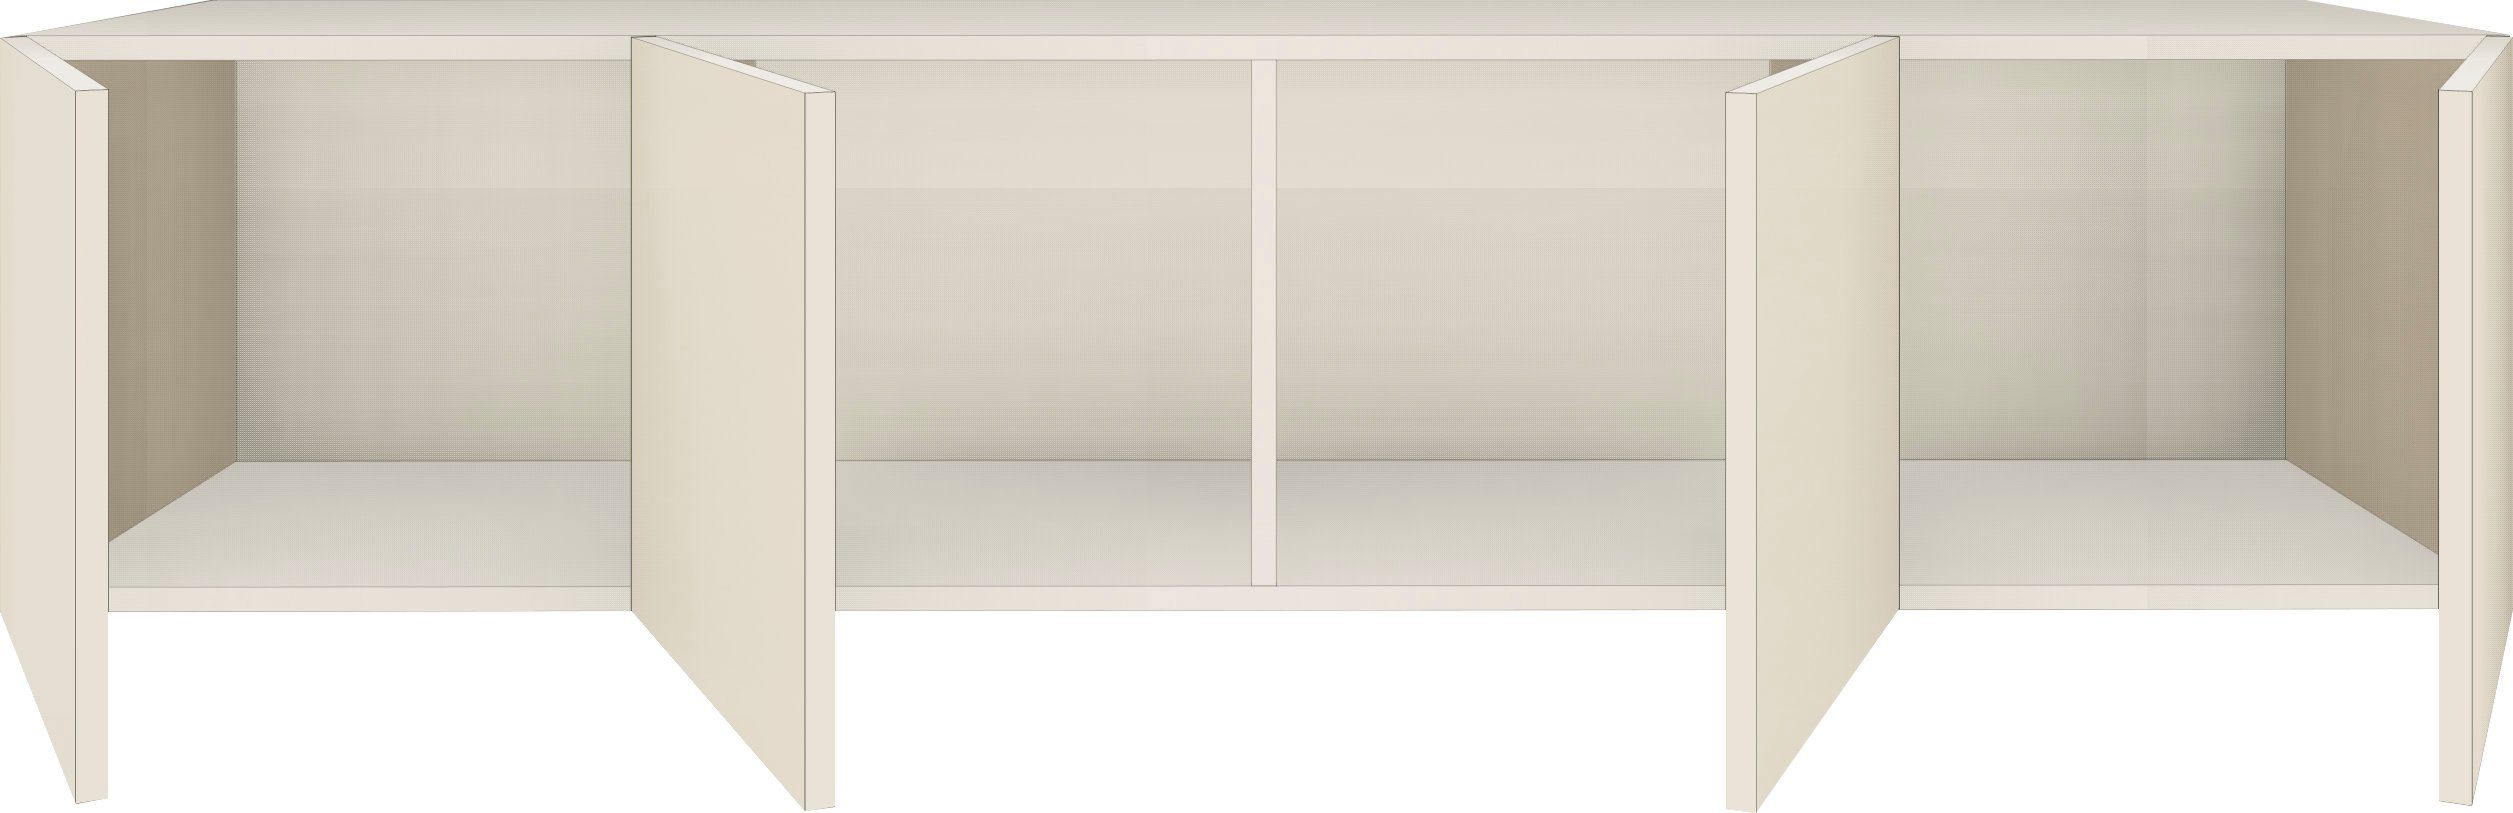 Breite Vaasa, Lowboard Möbel weiß cm, Hochglanz hängend 152 nur matt/weiß borchardt